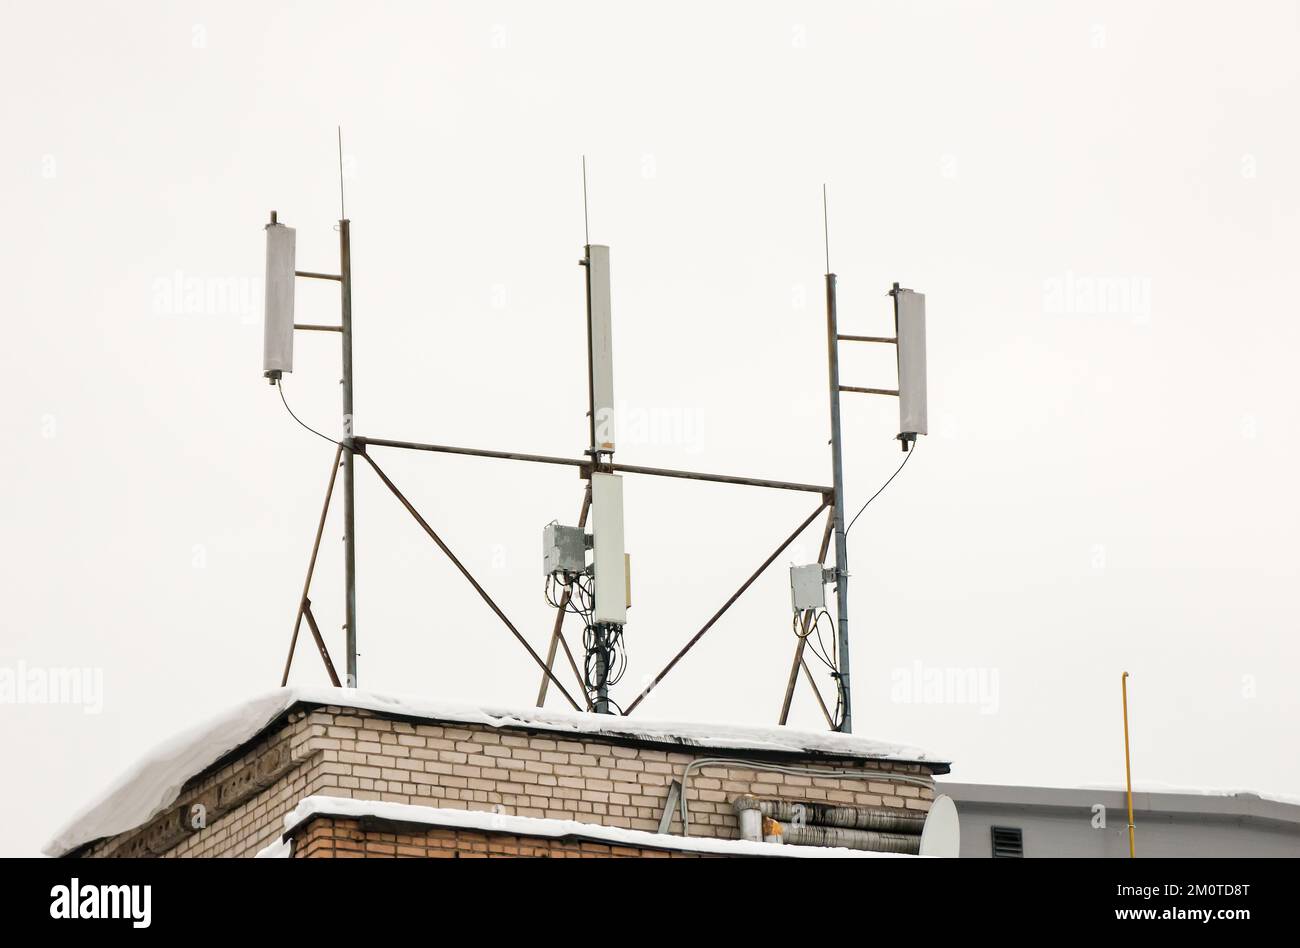 Mehrere Mobilfunkantennen auf dem Dach des Hauses sorgen für Kommunikation. Schnee liegt auf dem Meilenstein, vor dem Hintergrund eines grauen Himmels. Bewölkt, kalter Wintertag, weiches Licht. Stockfoto